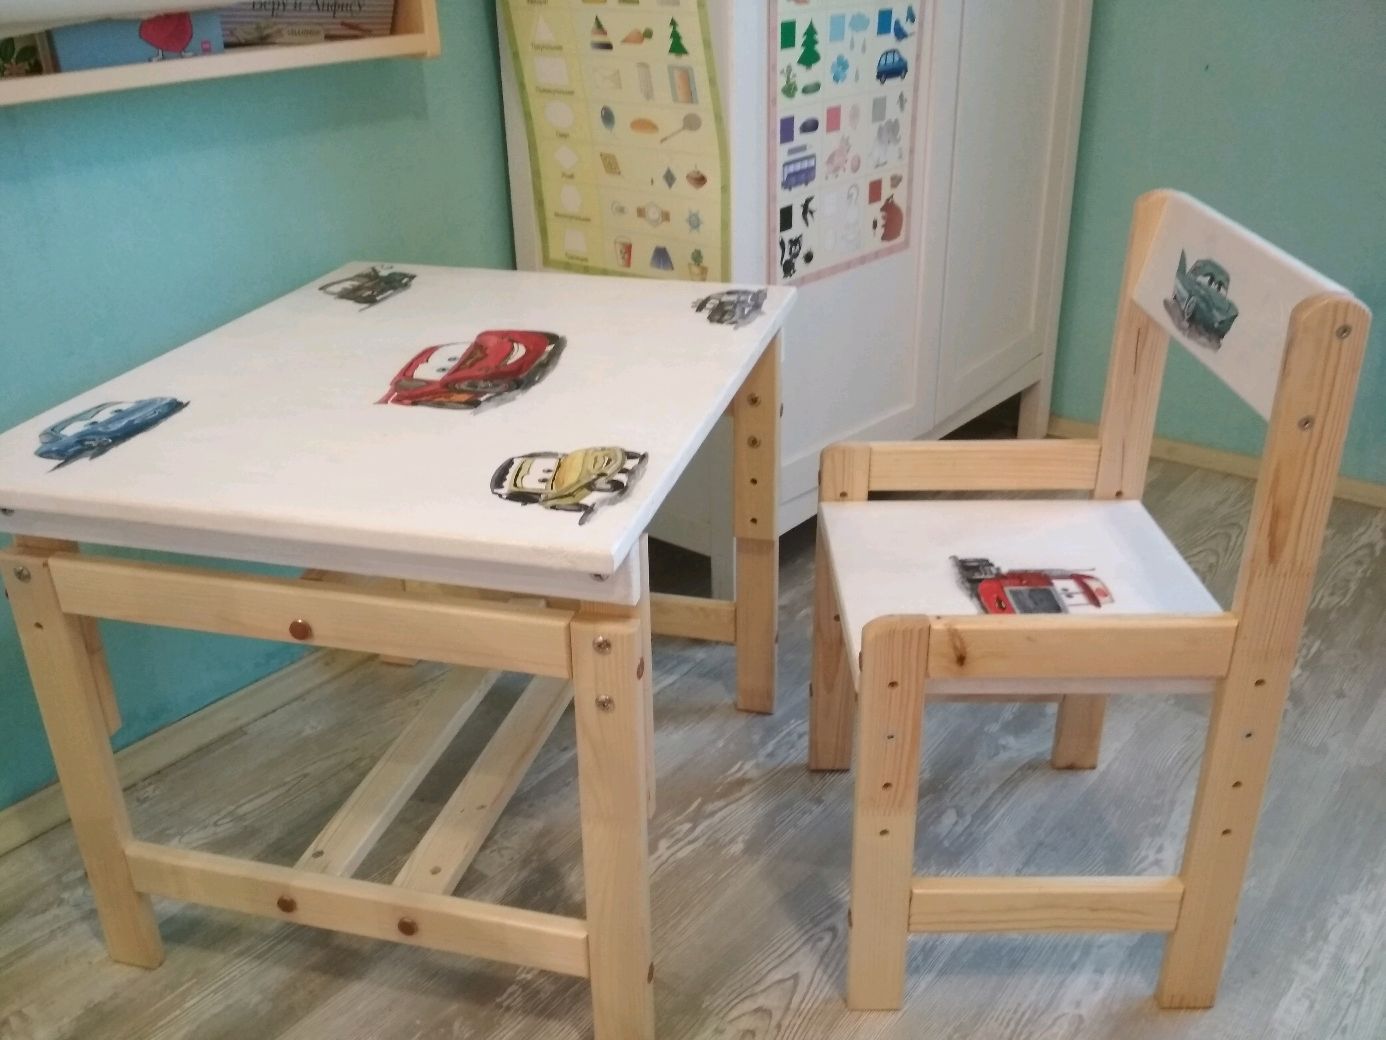 детский складной столик со стульчиком своими руками